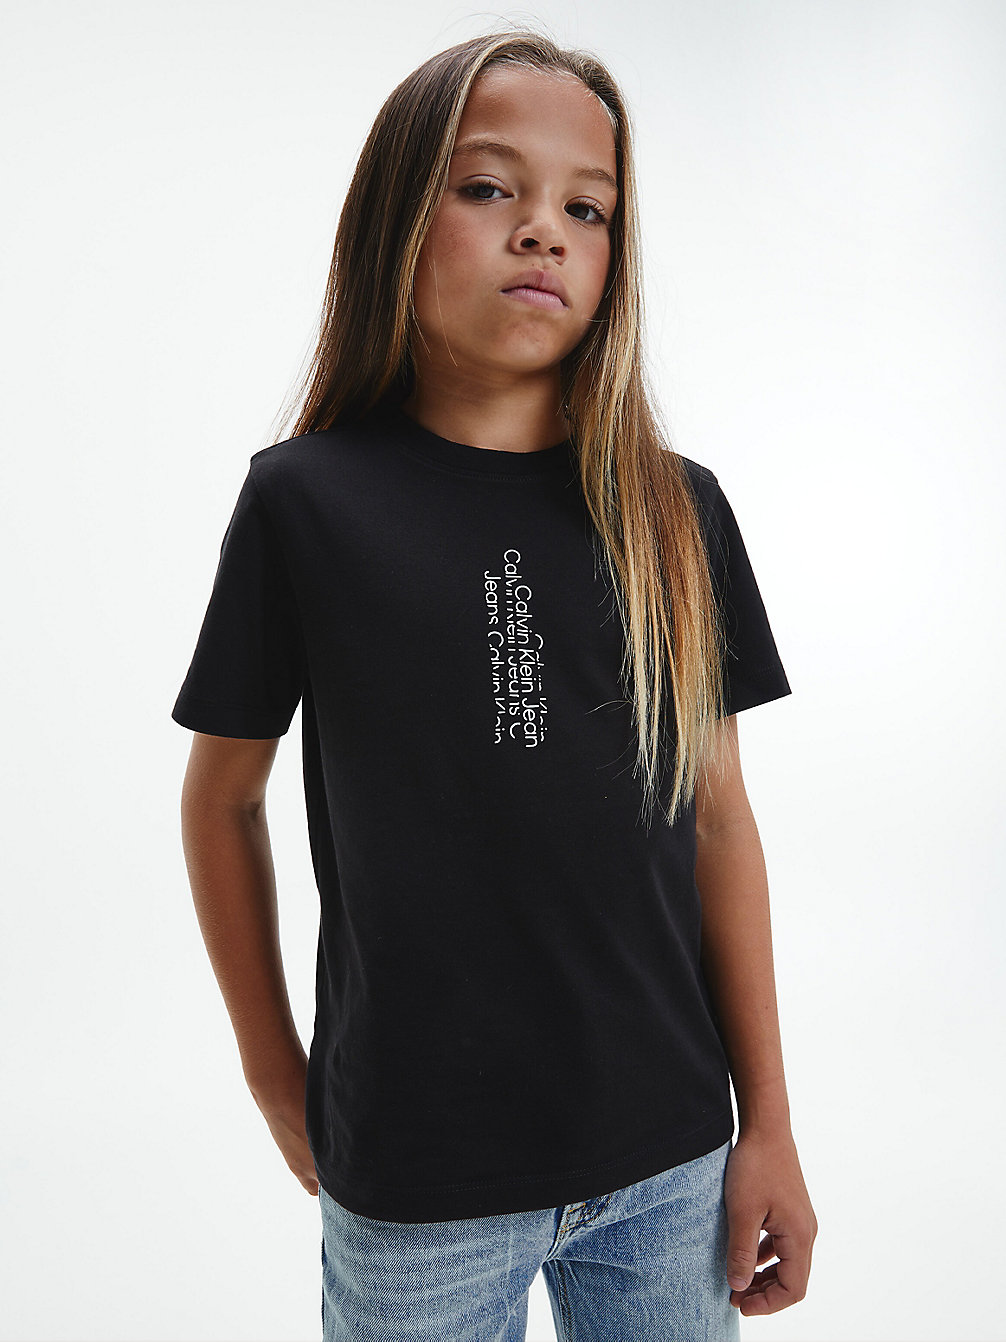 CK BLACK T-Shirt En Coton Bio Avec Logo undefined boys Calvin Klein